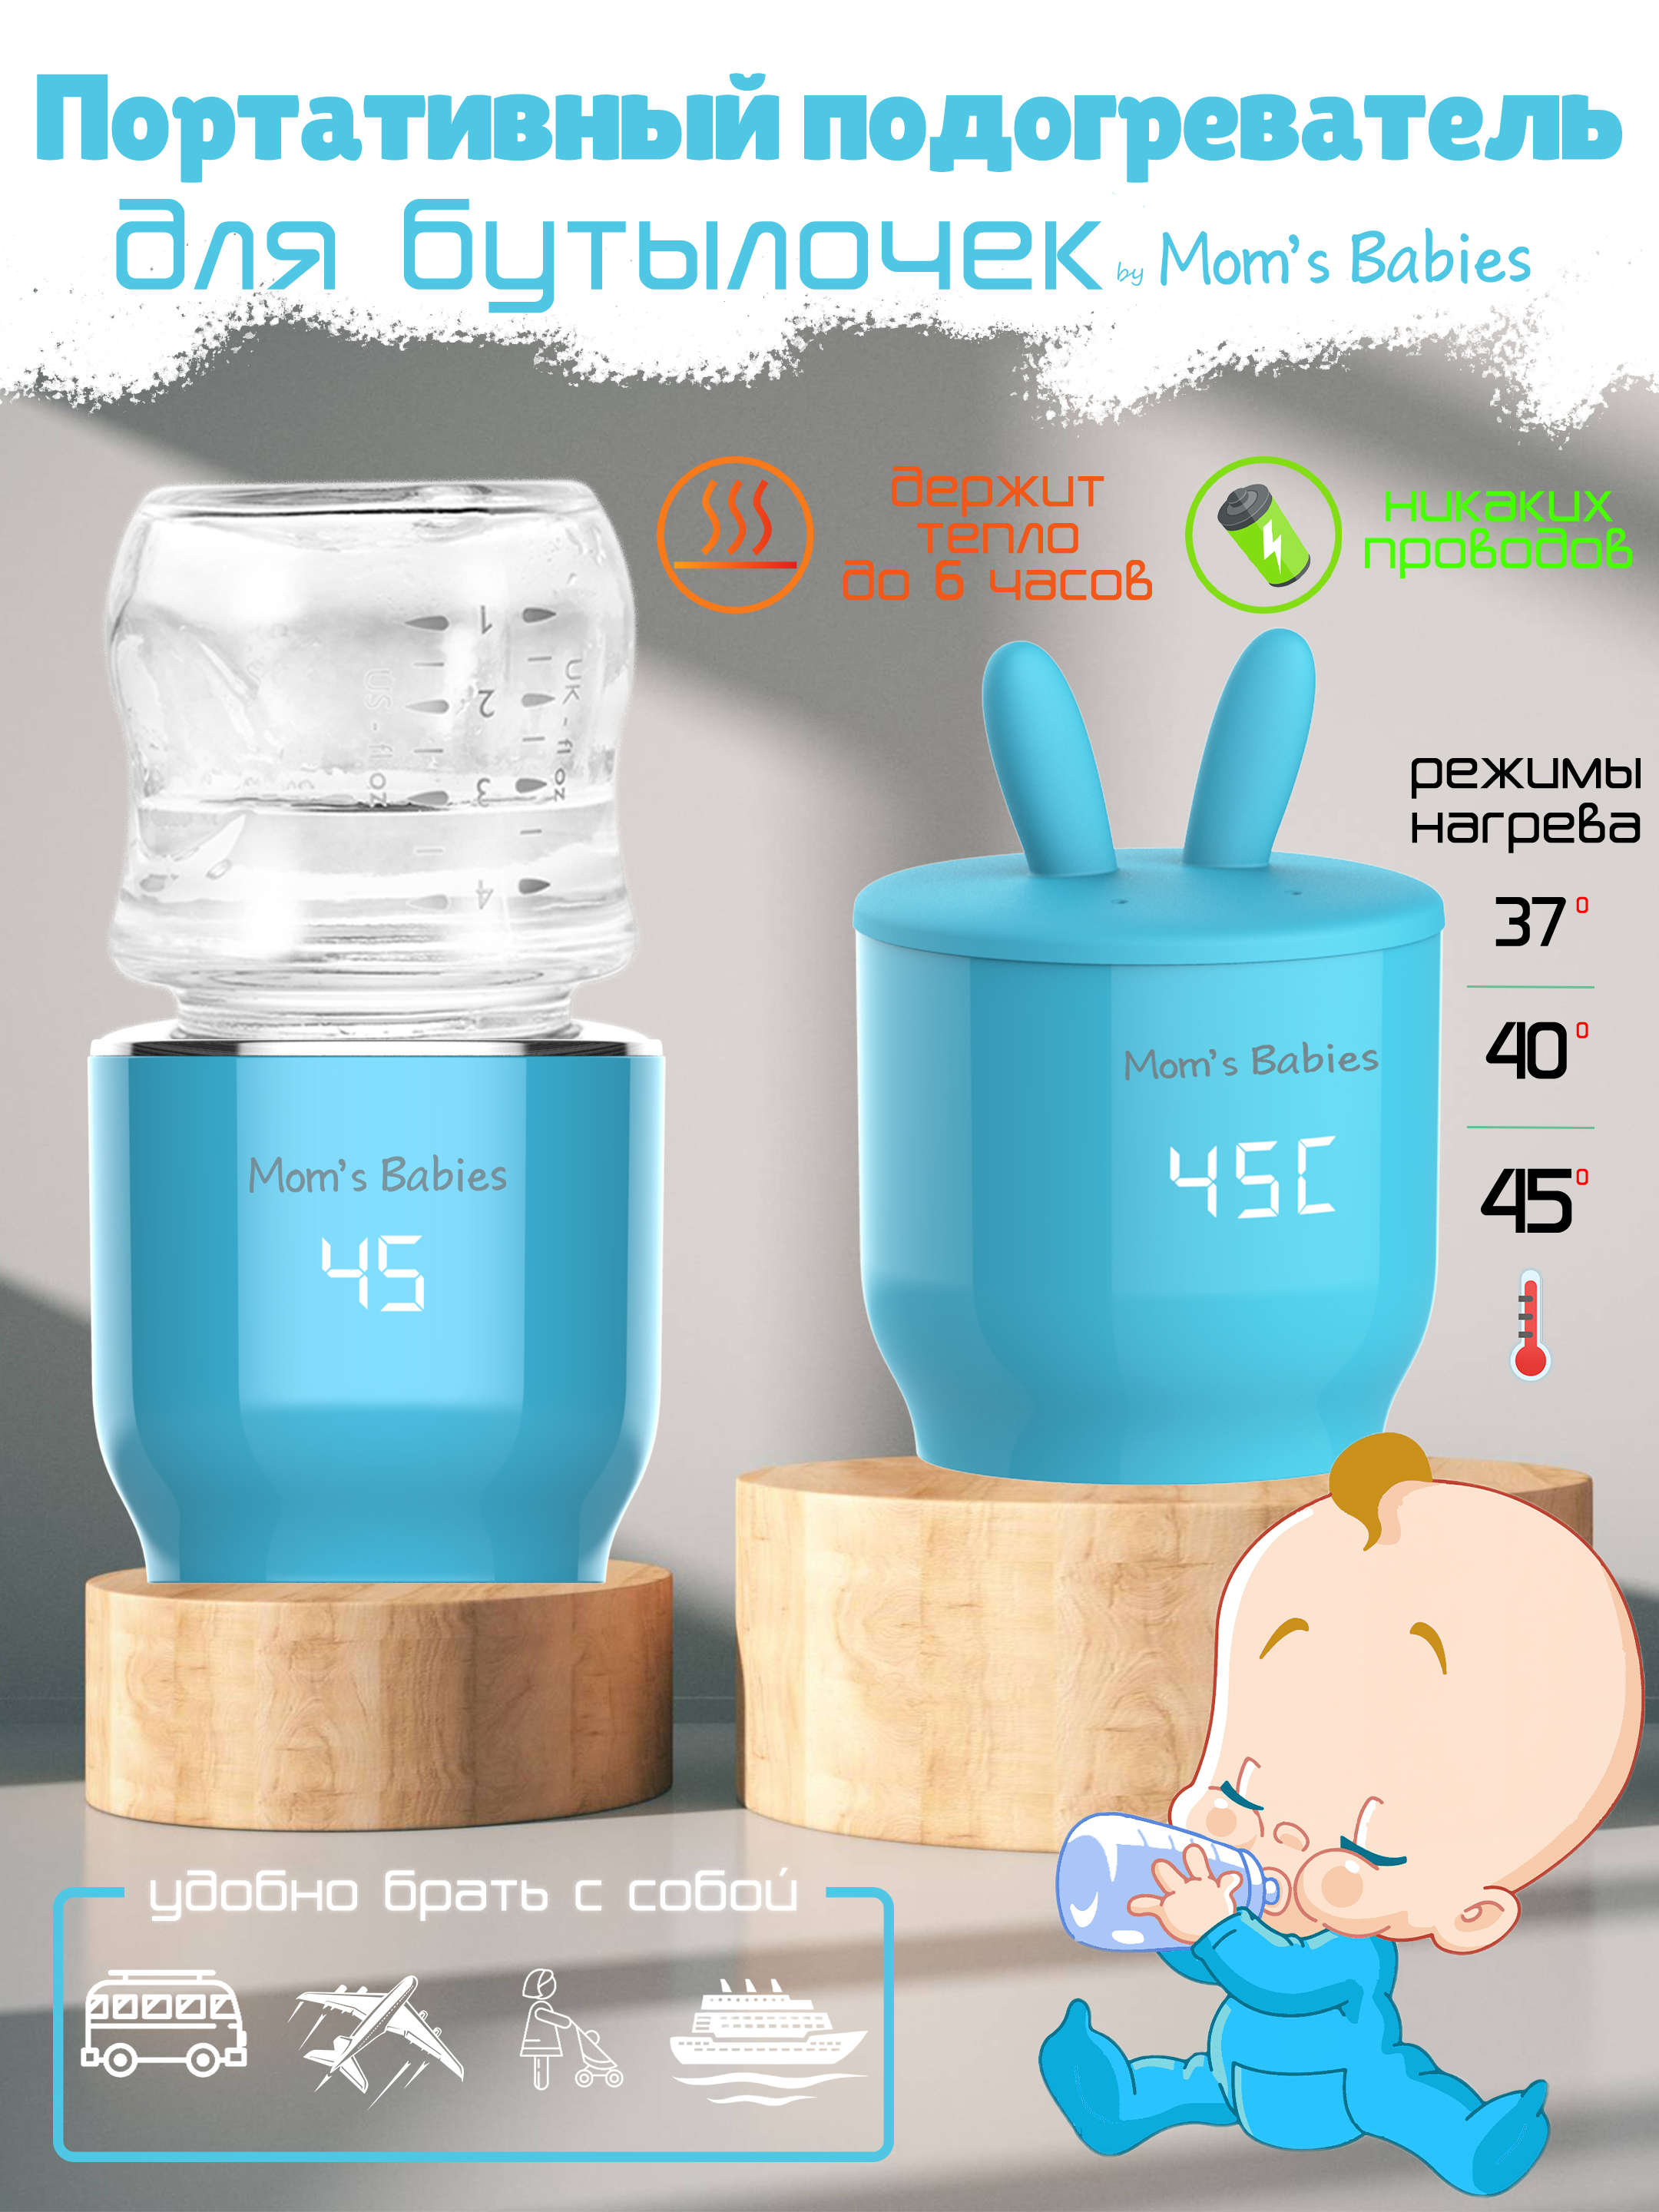 Портативный подогреватель Mom's Babies FS01 для бутылочек и детского питания голубой подогреватель canpol babies для бутылочек электрический универсальный